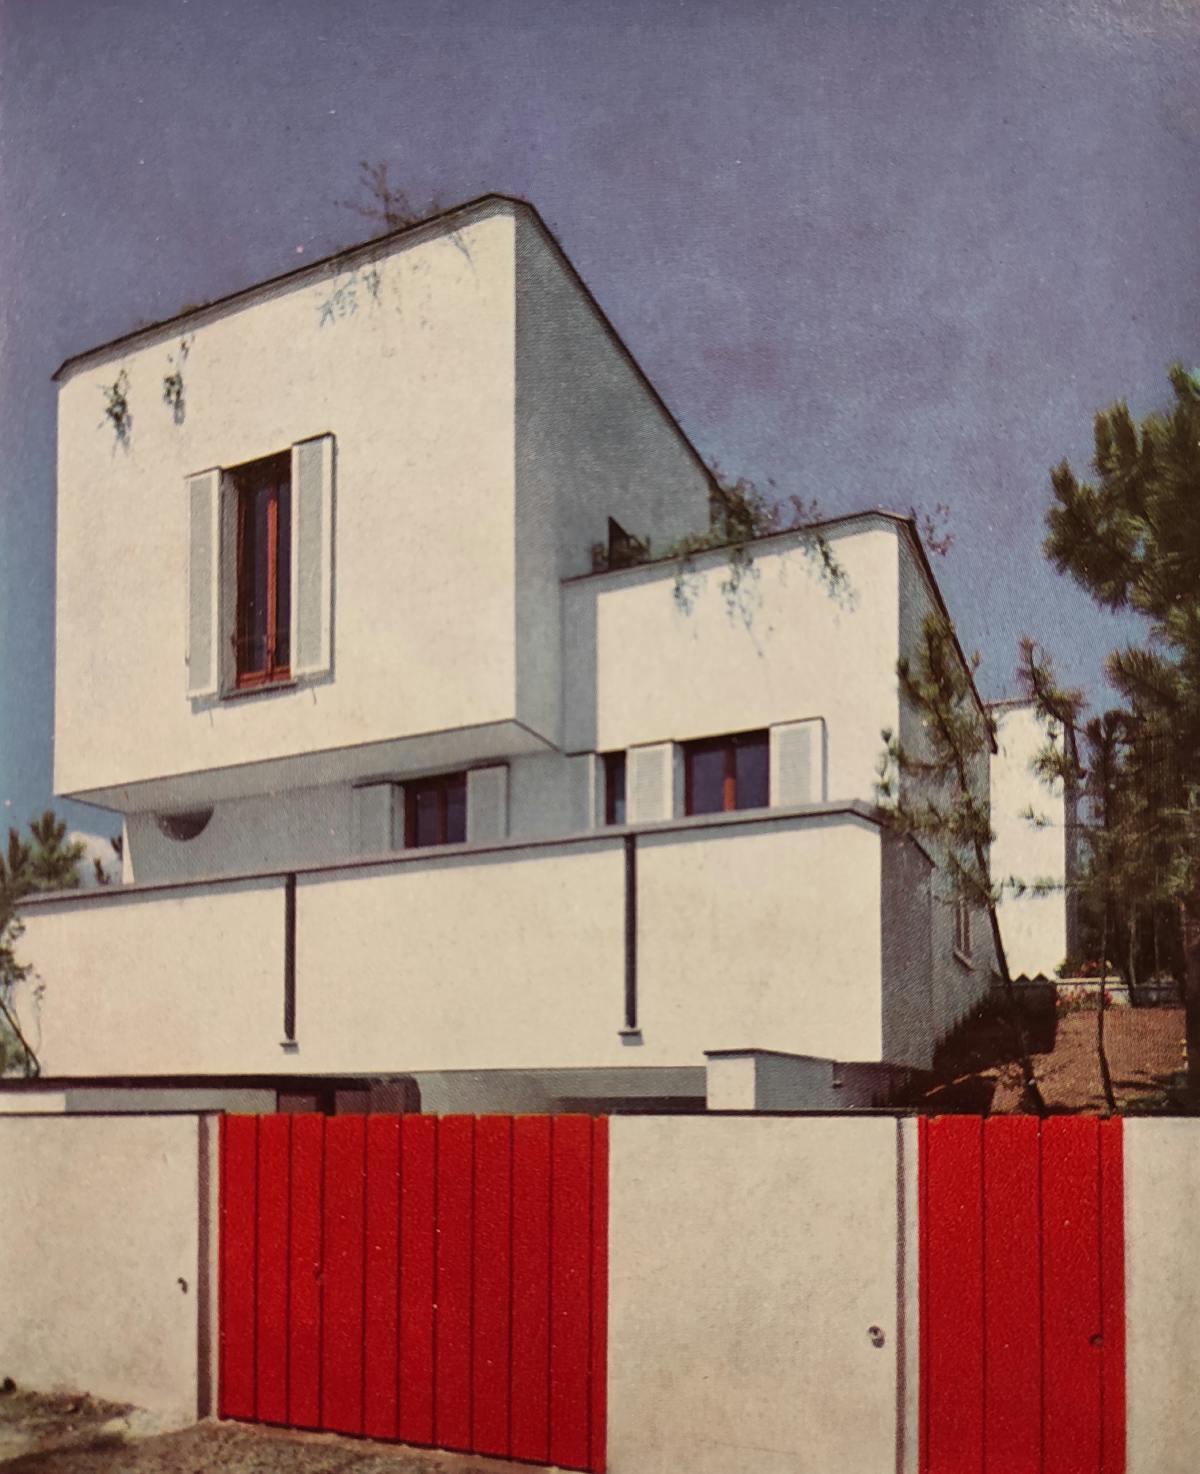 Casa Arosio, Arenzano, Da R. Aloi, Ville in Italia, Hoepli, Milano 1960